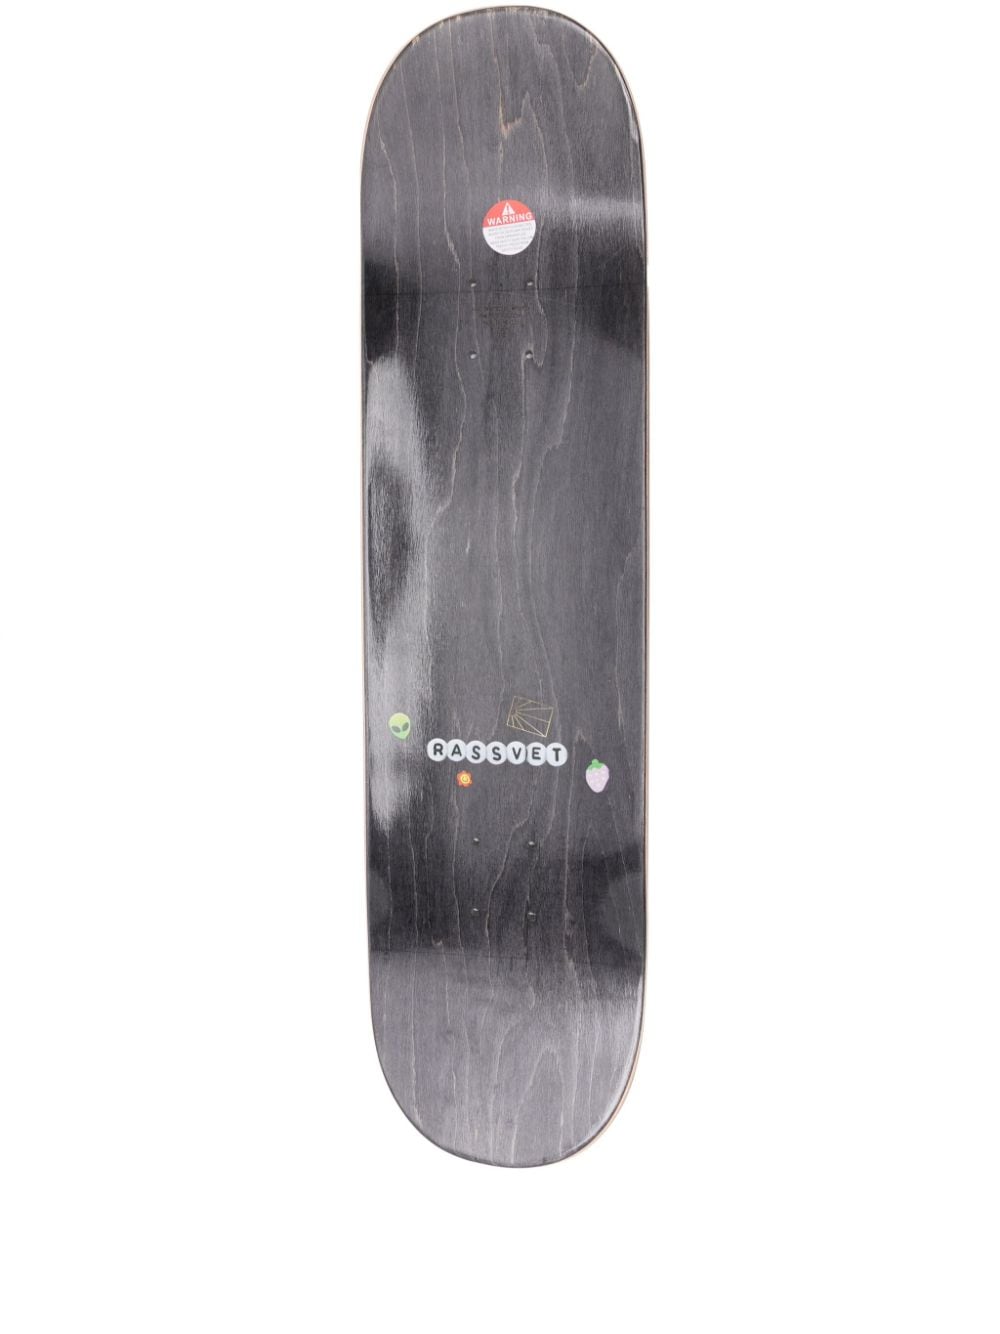 RASSVET Bracelet-print skateboard deck (8.25") - White